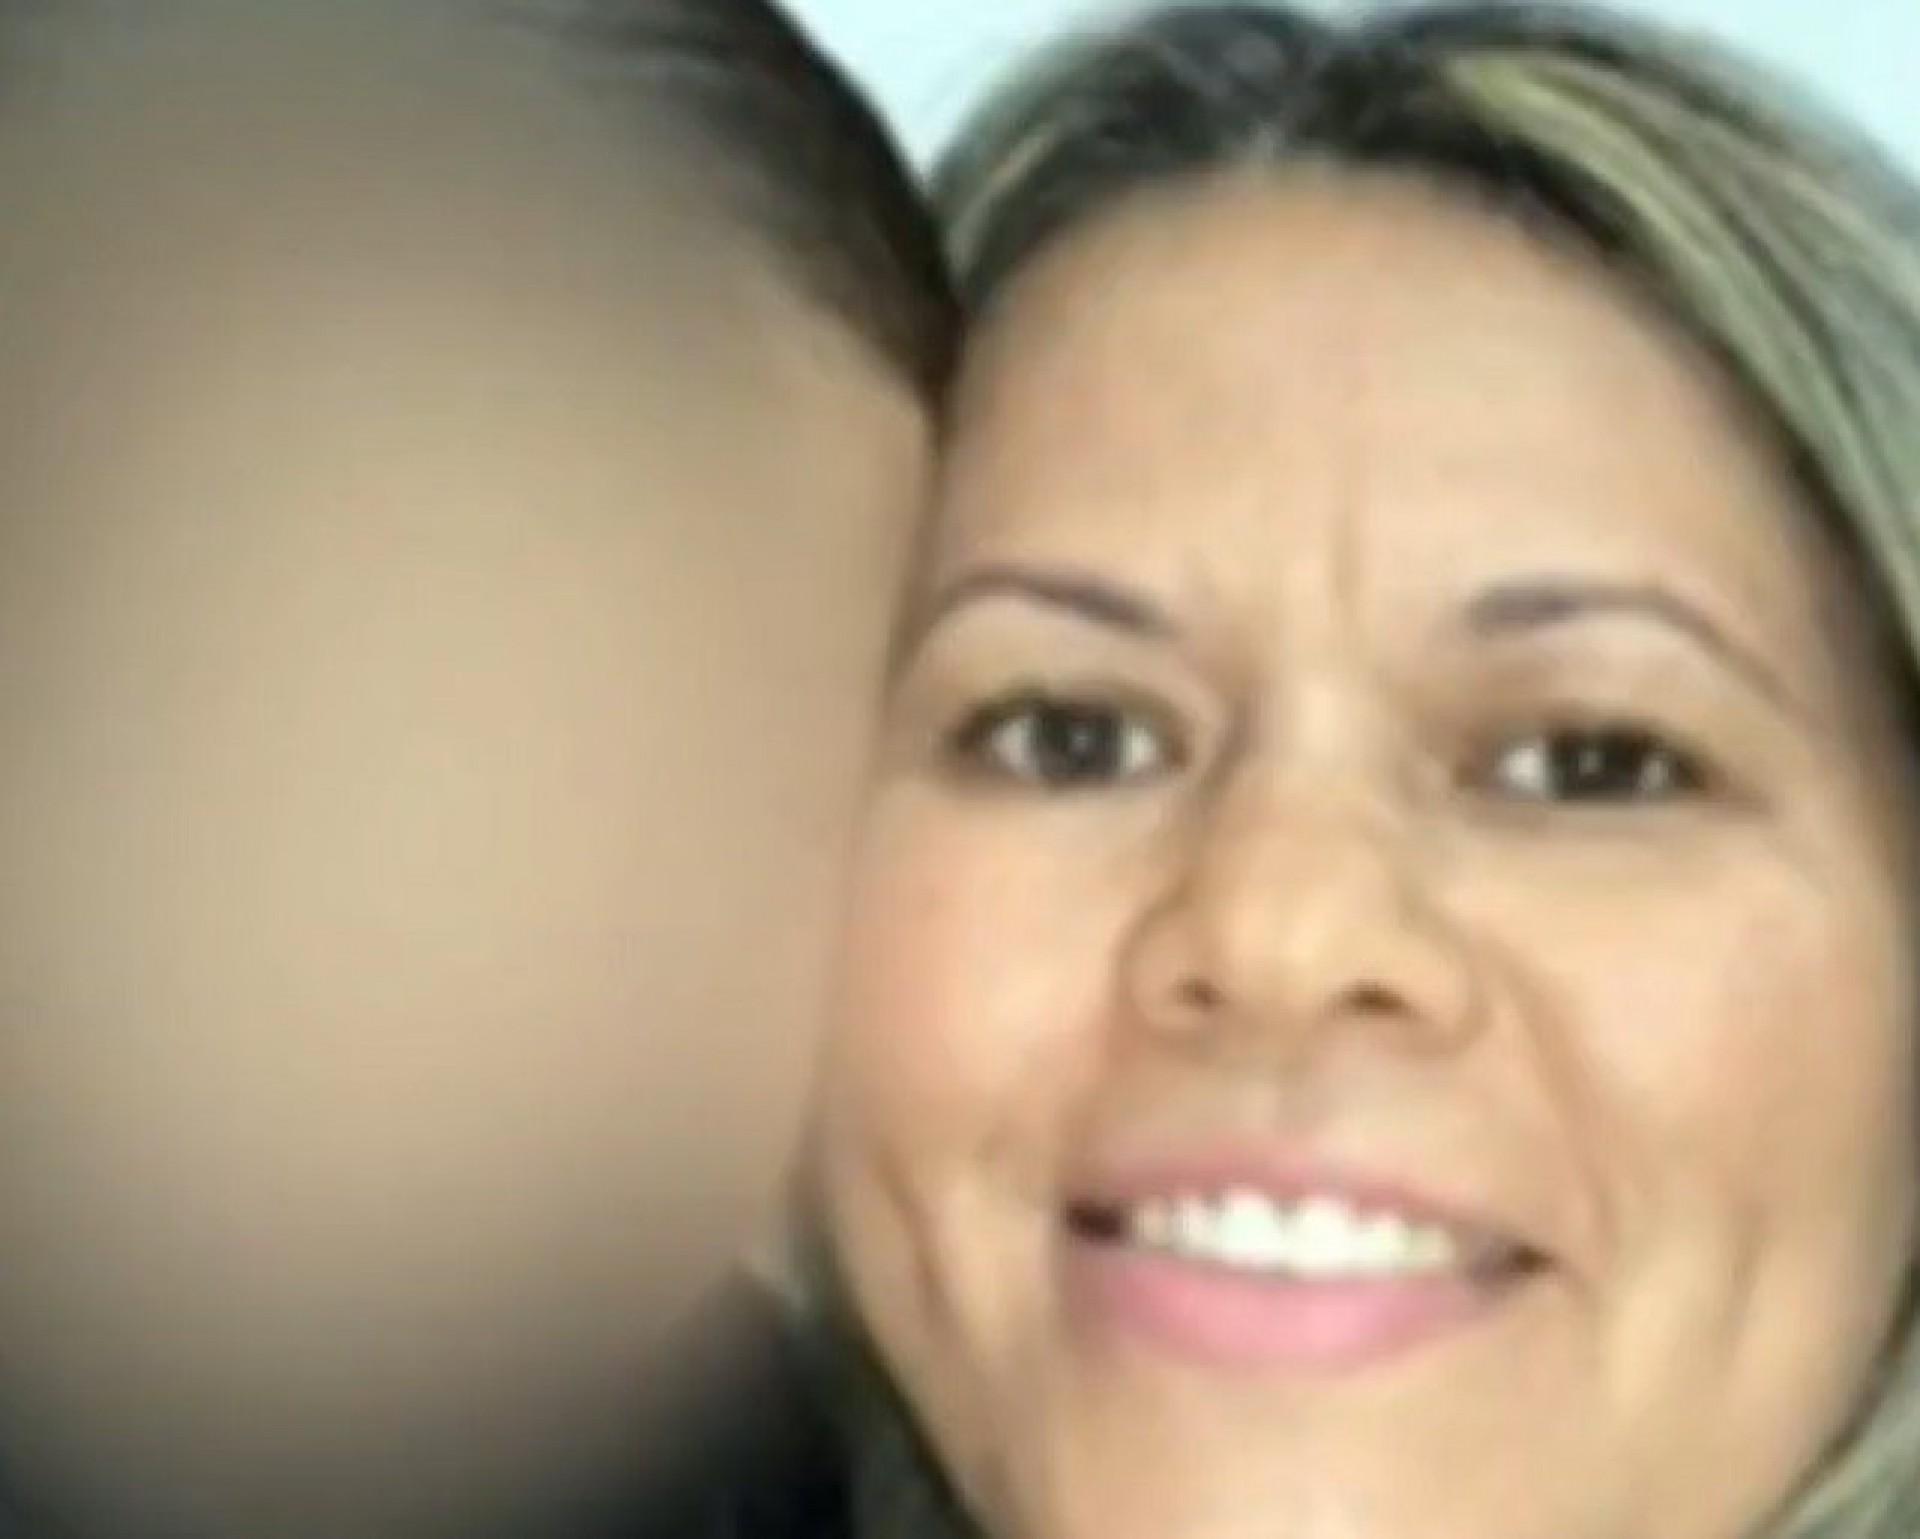 Mulher forja o próprio sequestro e pede R$ 70 mil de resgate ao marido - Reprodução / TV Globo